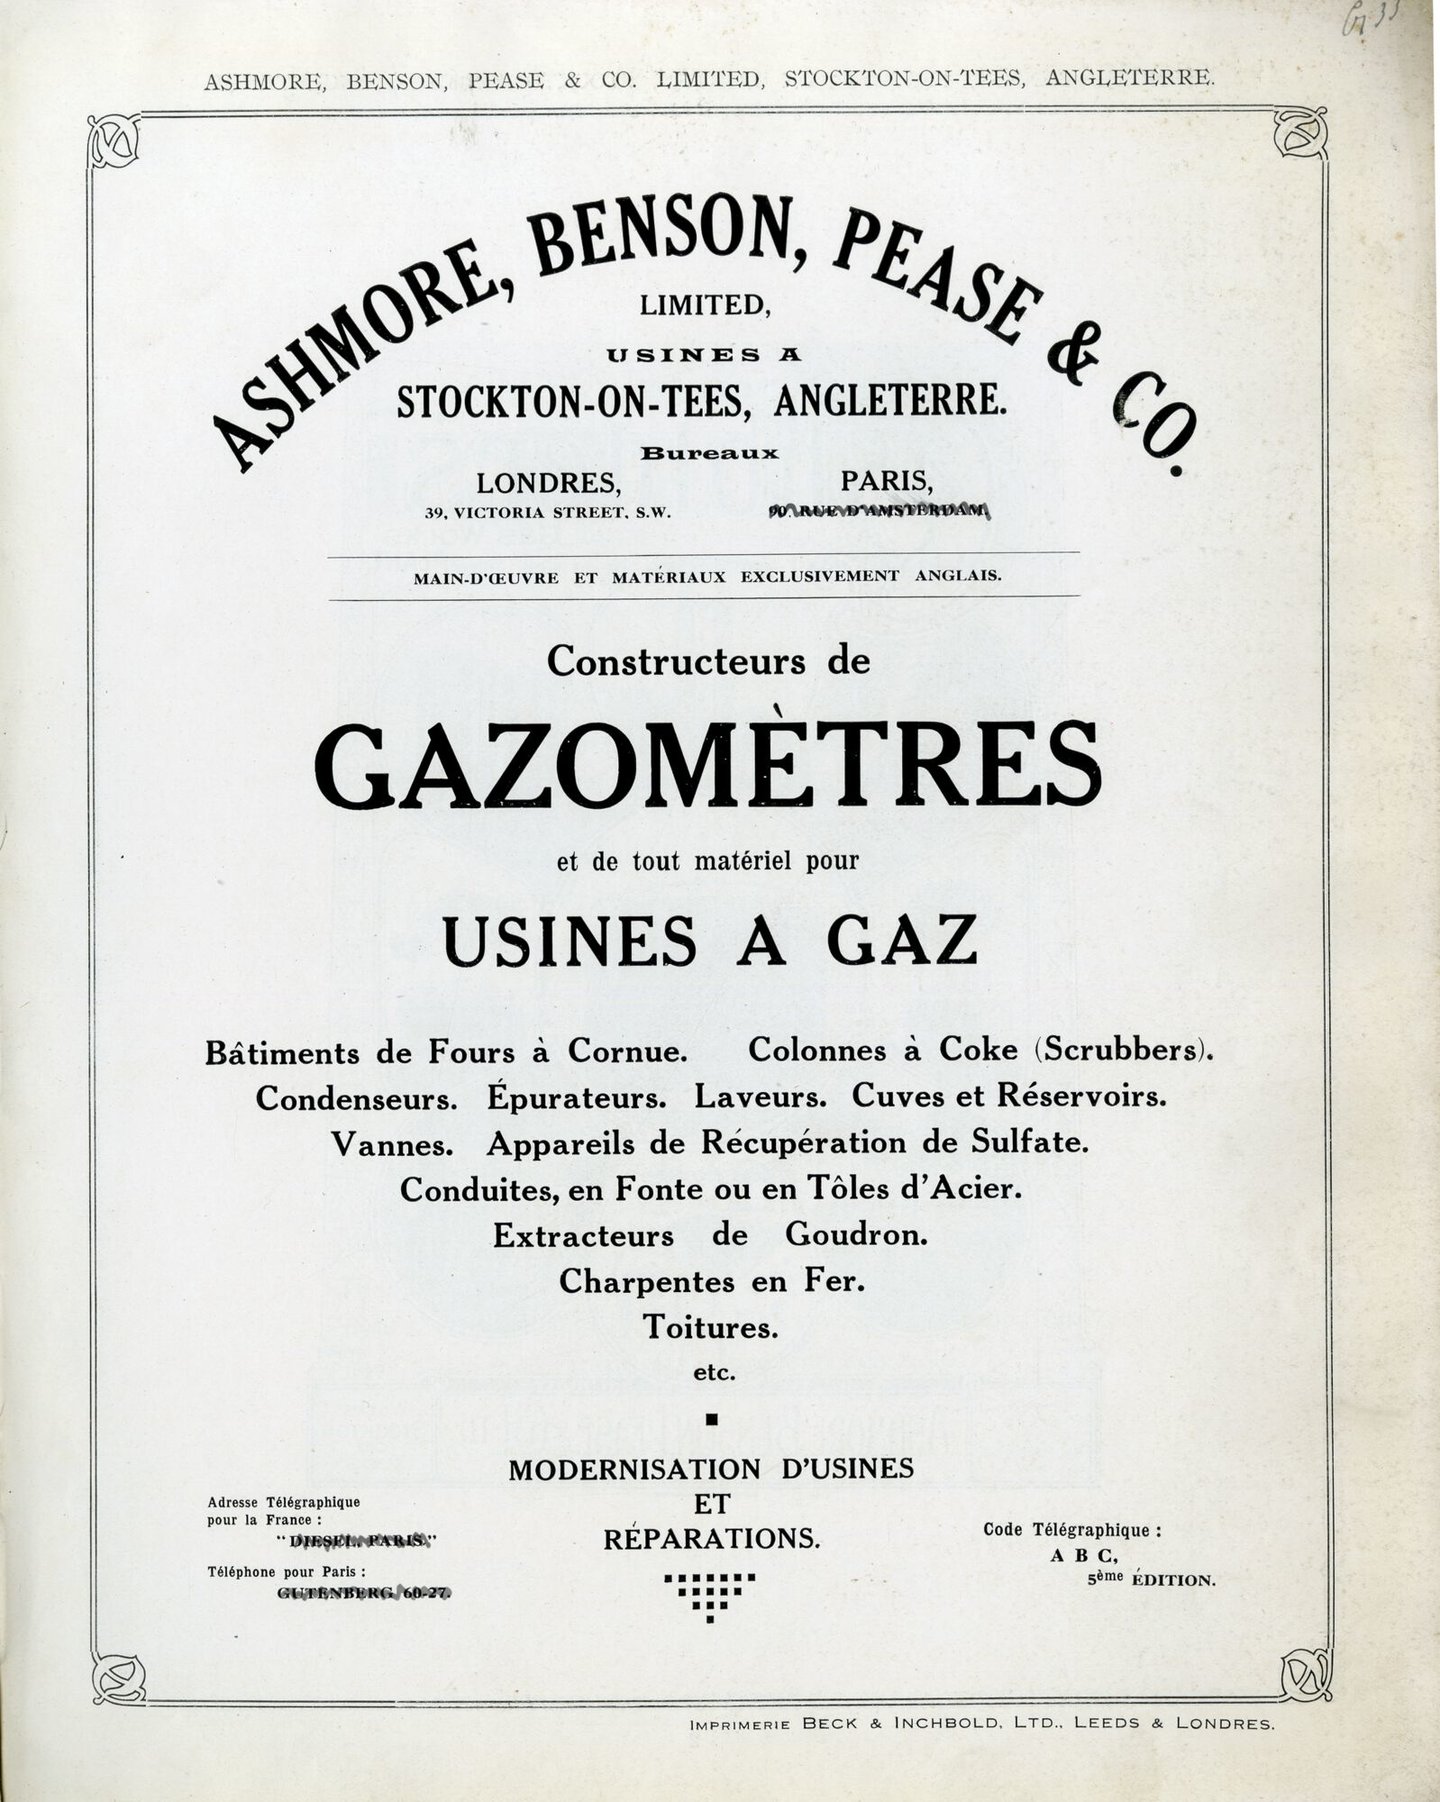 Productcatalogus met apparatuur en onderdelen voor gasfabrieken van Ashmore, Benson, Pease & Co